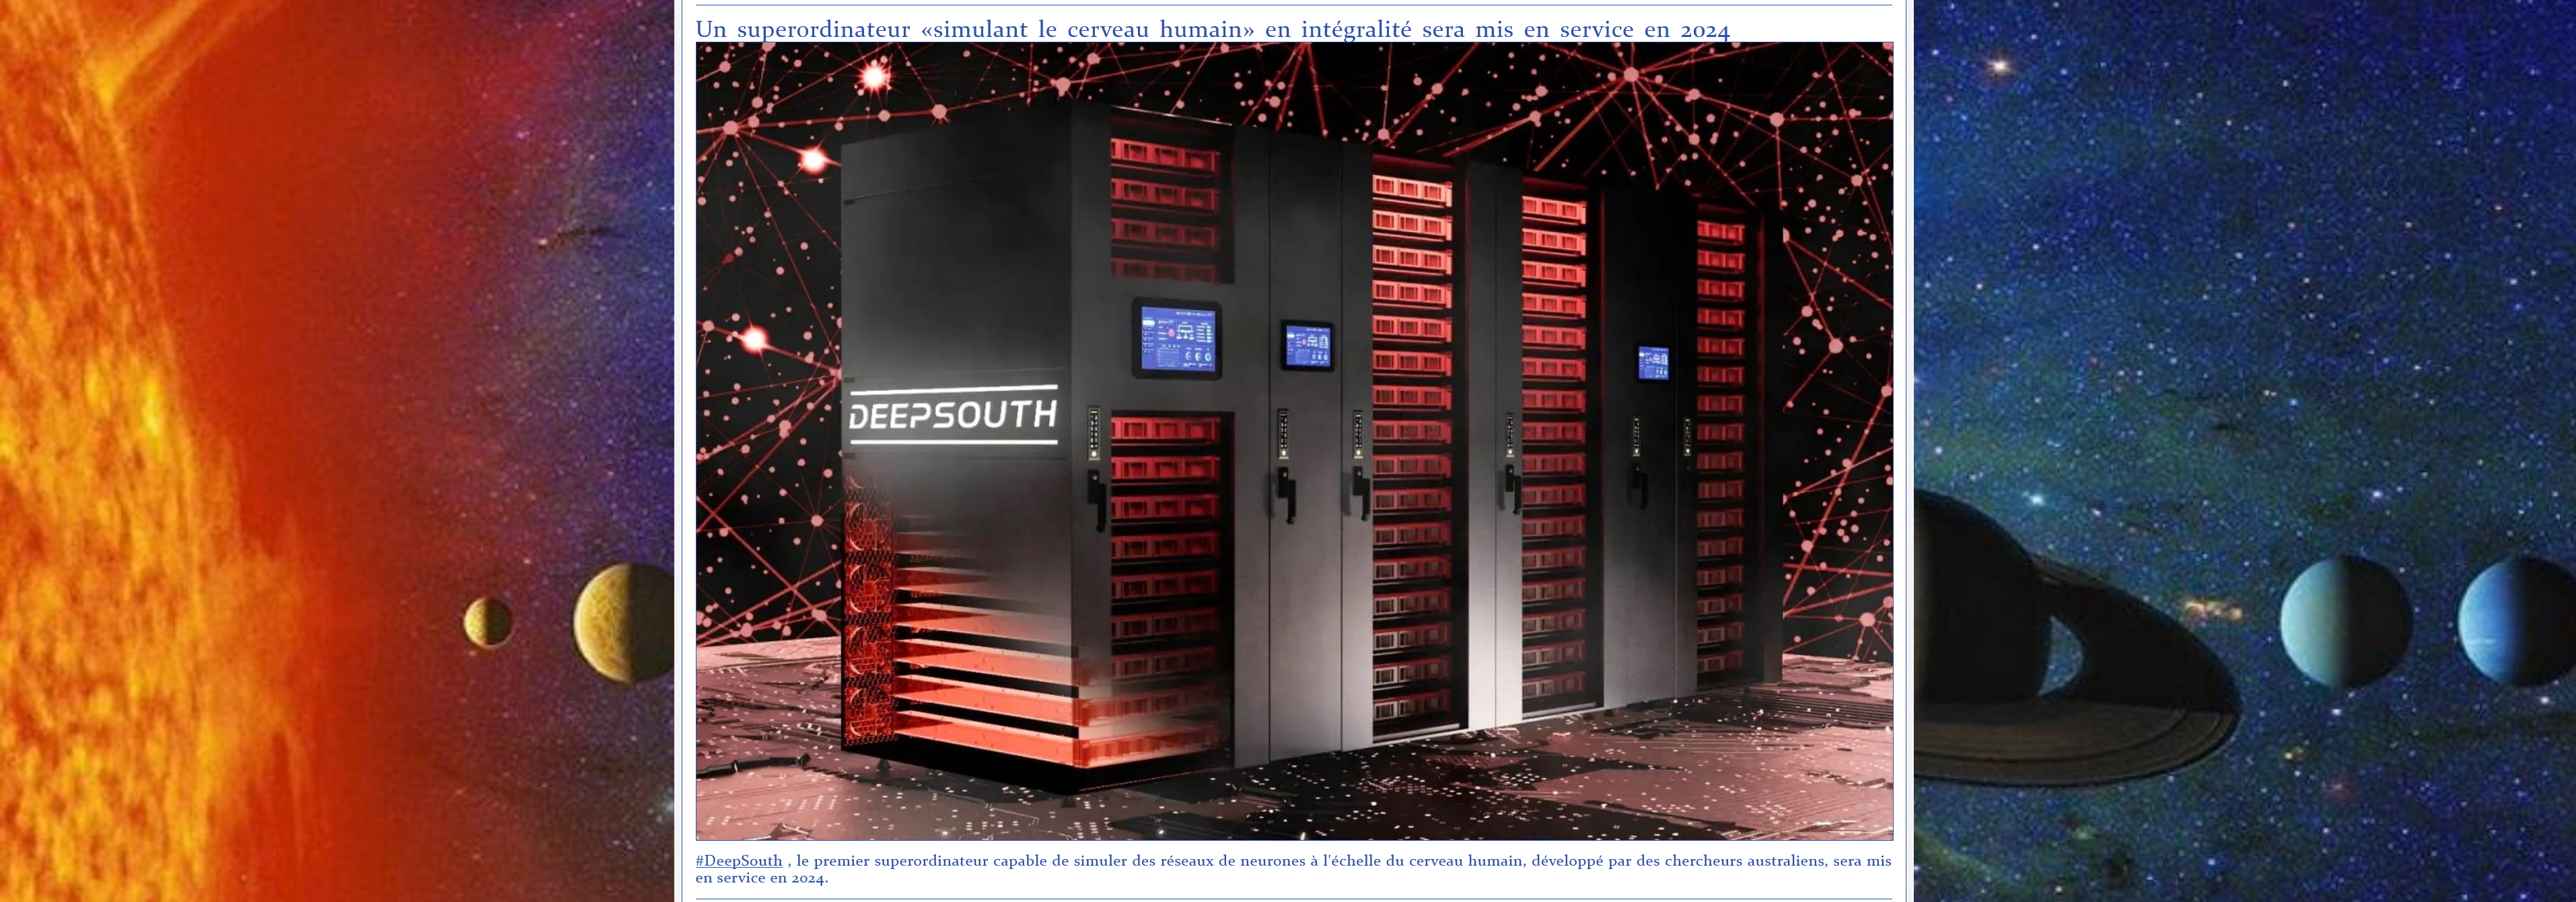 #DeepSouth, le premier superordinateur capable de simuler des réseaux de neurones à l'échelle du cerveau humain, développé par des chercheurs australiens, sera mis en service en 2024.